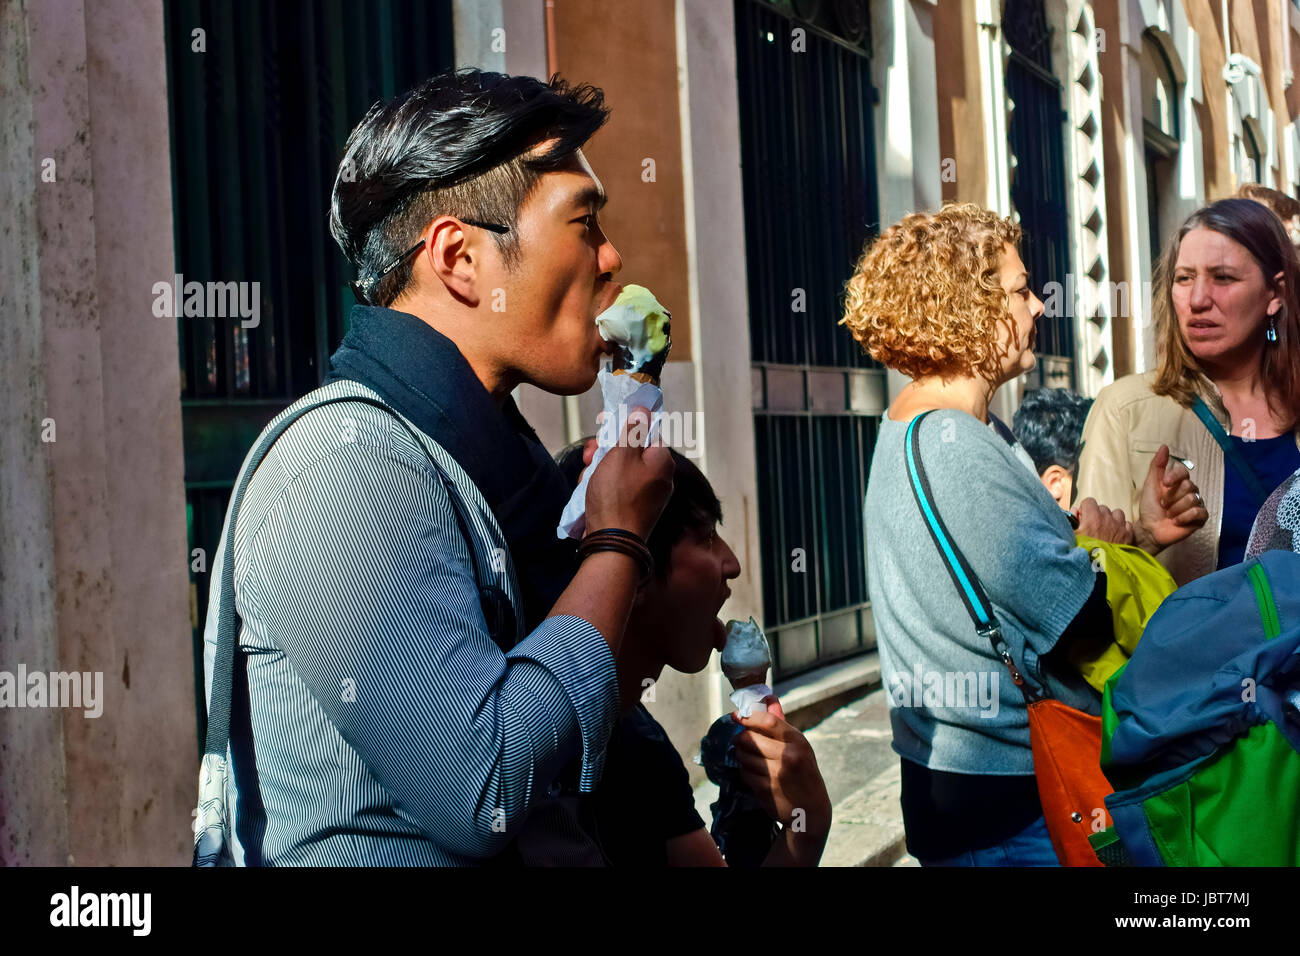 Junger Asiat genießt es, Eis-Kegel im Freien in einer römischen Gasse Rom, Italien, Europa, Europäische Union, EU zu essen. Stockfoto